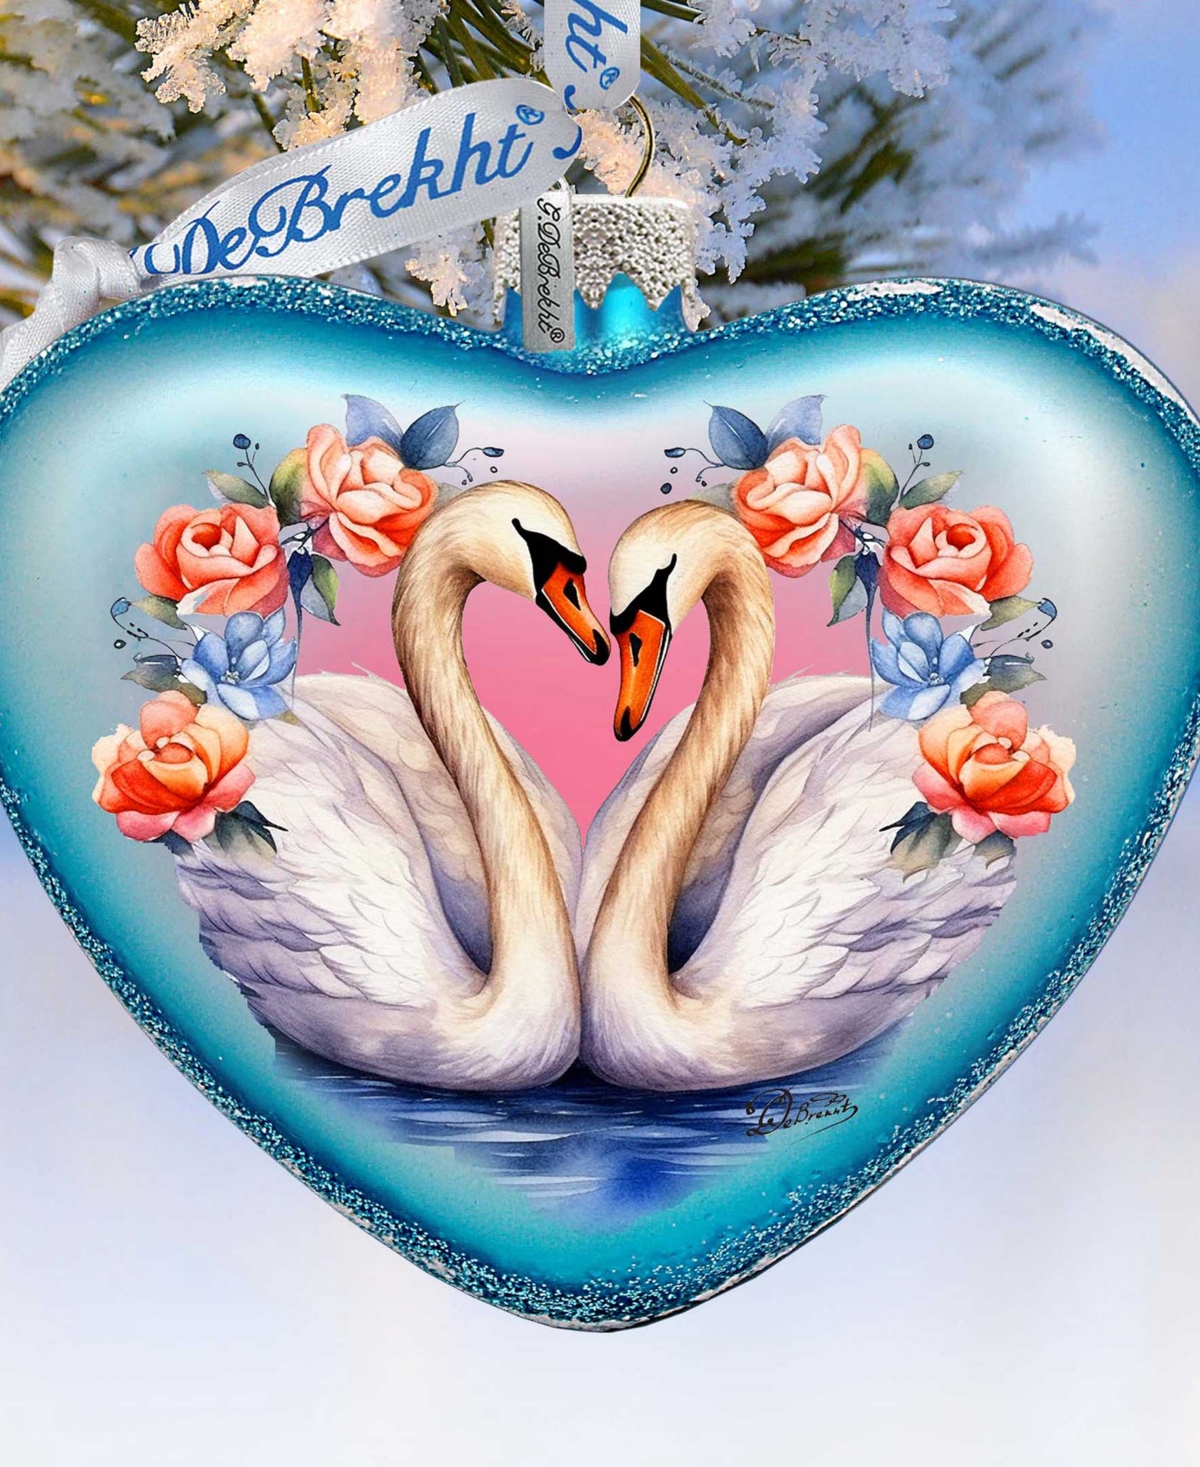 Designocracy Swan Love Heart Mercury Glass Christmas Ornaments G. Debrekht In Multi Color